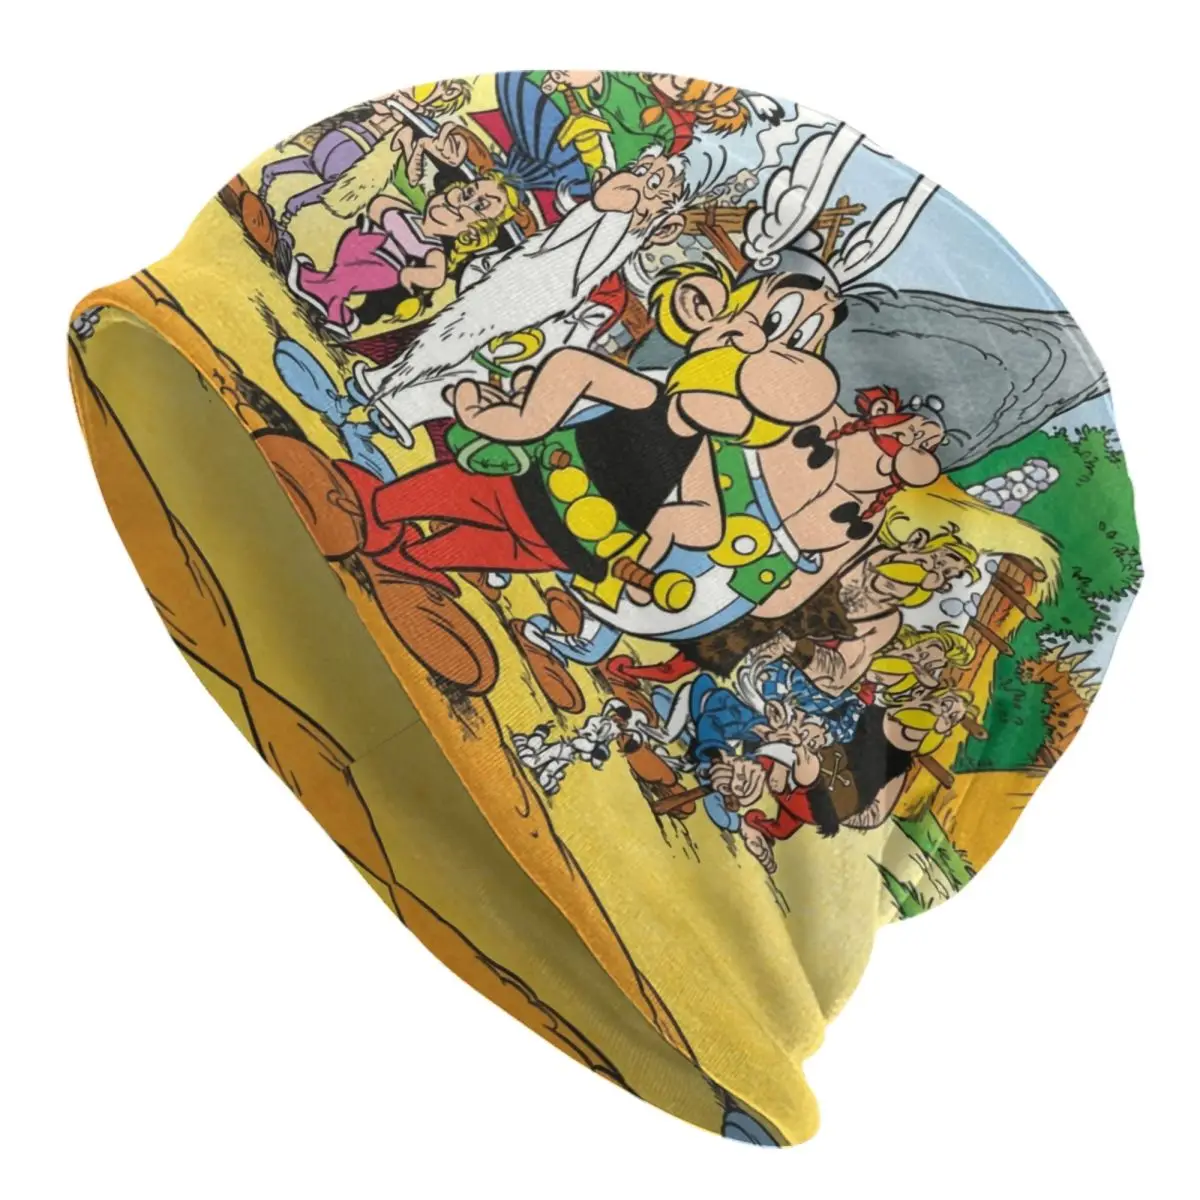 

Шапка-бини в стиле аниме Asterix и Obelix, зимняя теплая шапка, мужские вязаные шапки, уличные шапочки в стиле аниме с мультяшным изображением Getafix, облегающие шапки, шапки